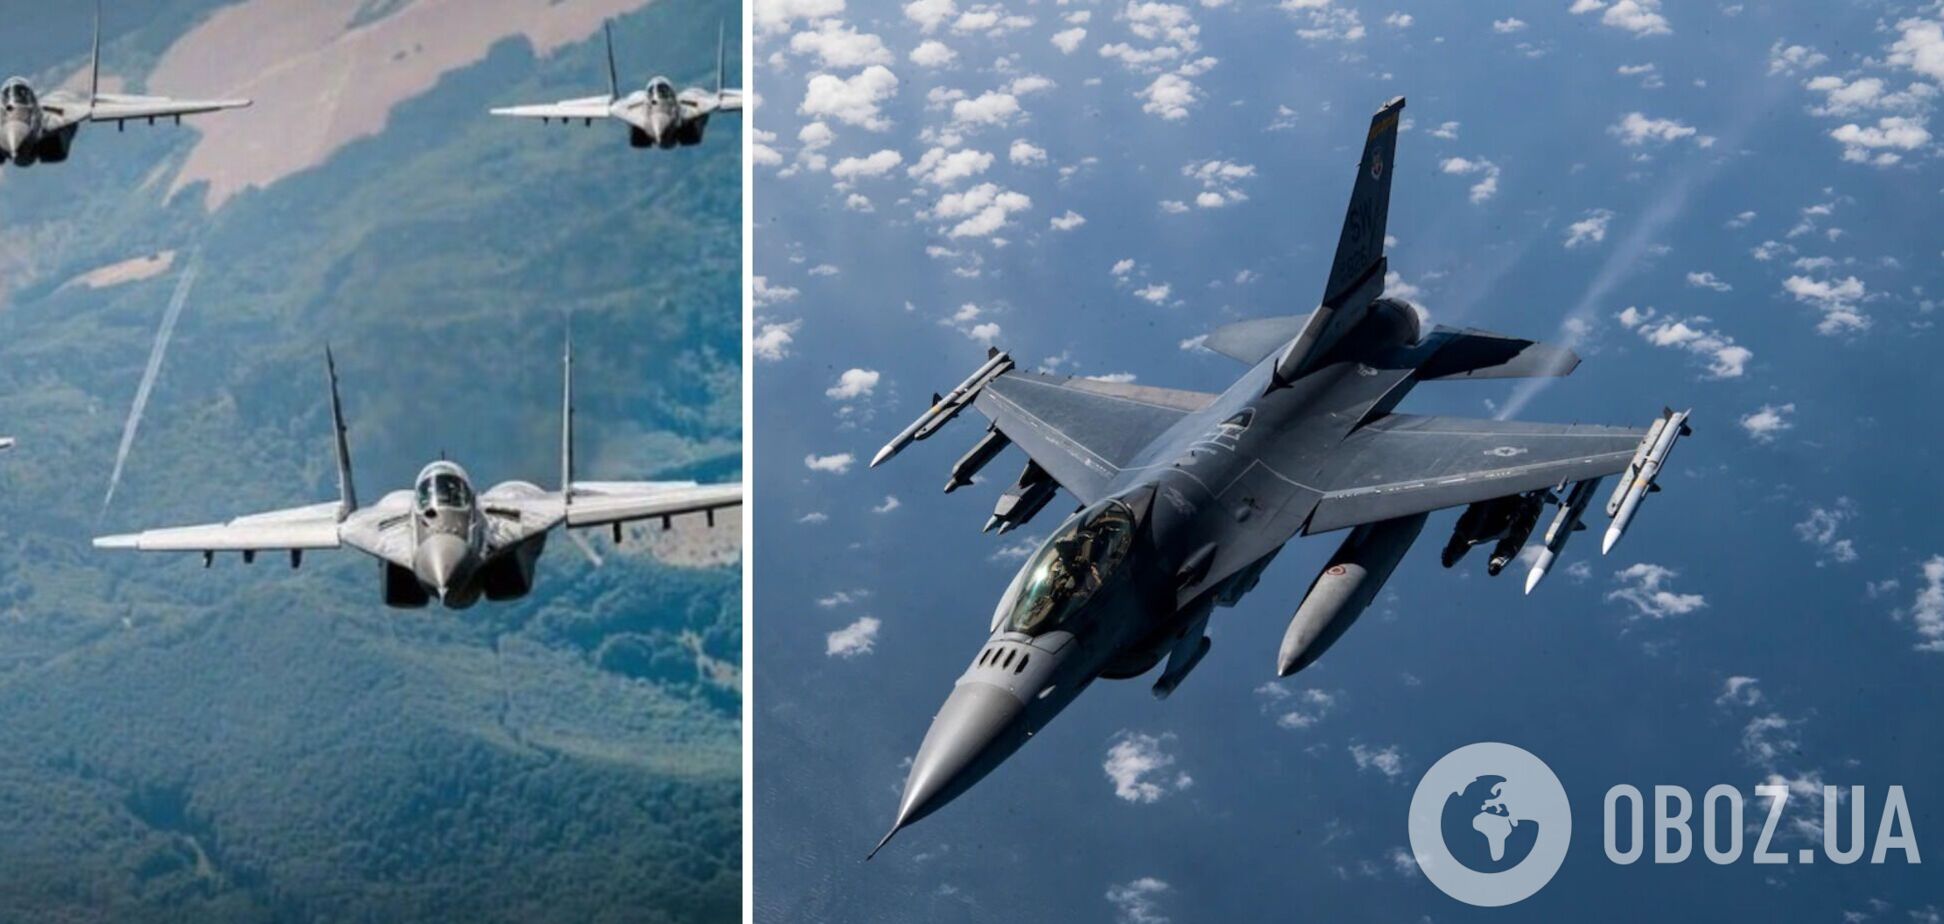 Украинские пилоты превзошли ожидания Пентагона: их смогут научить управлять F-16 за 4 месяца вместо 18 – СМИ